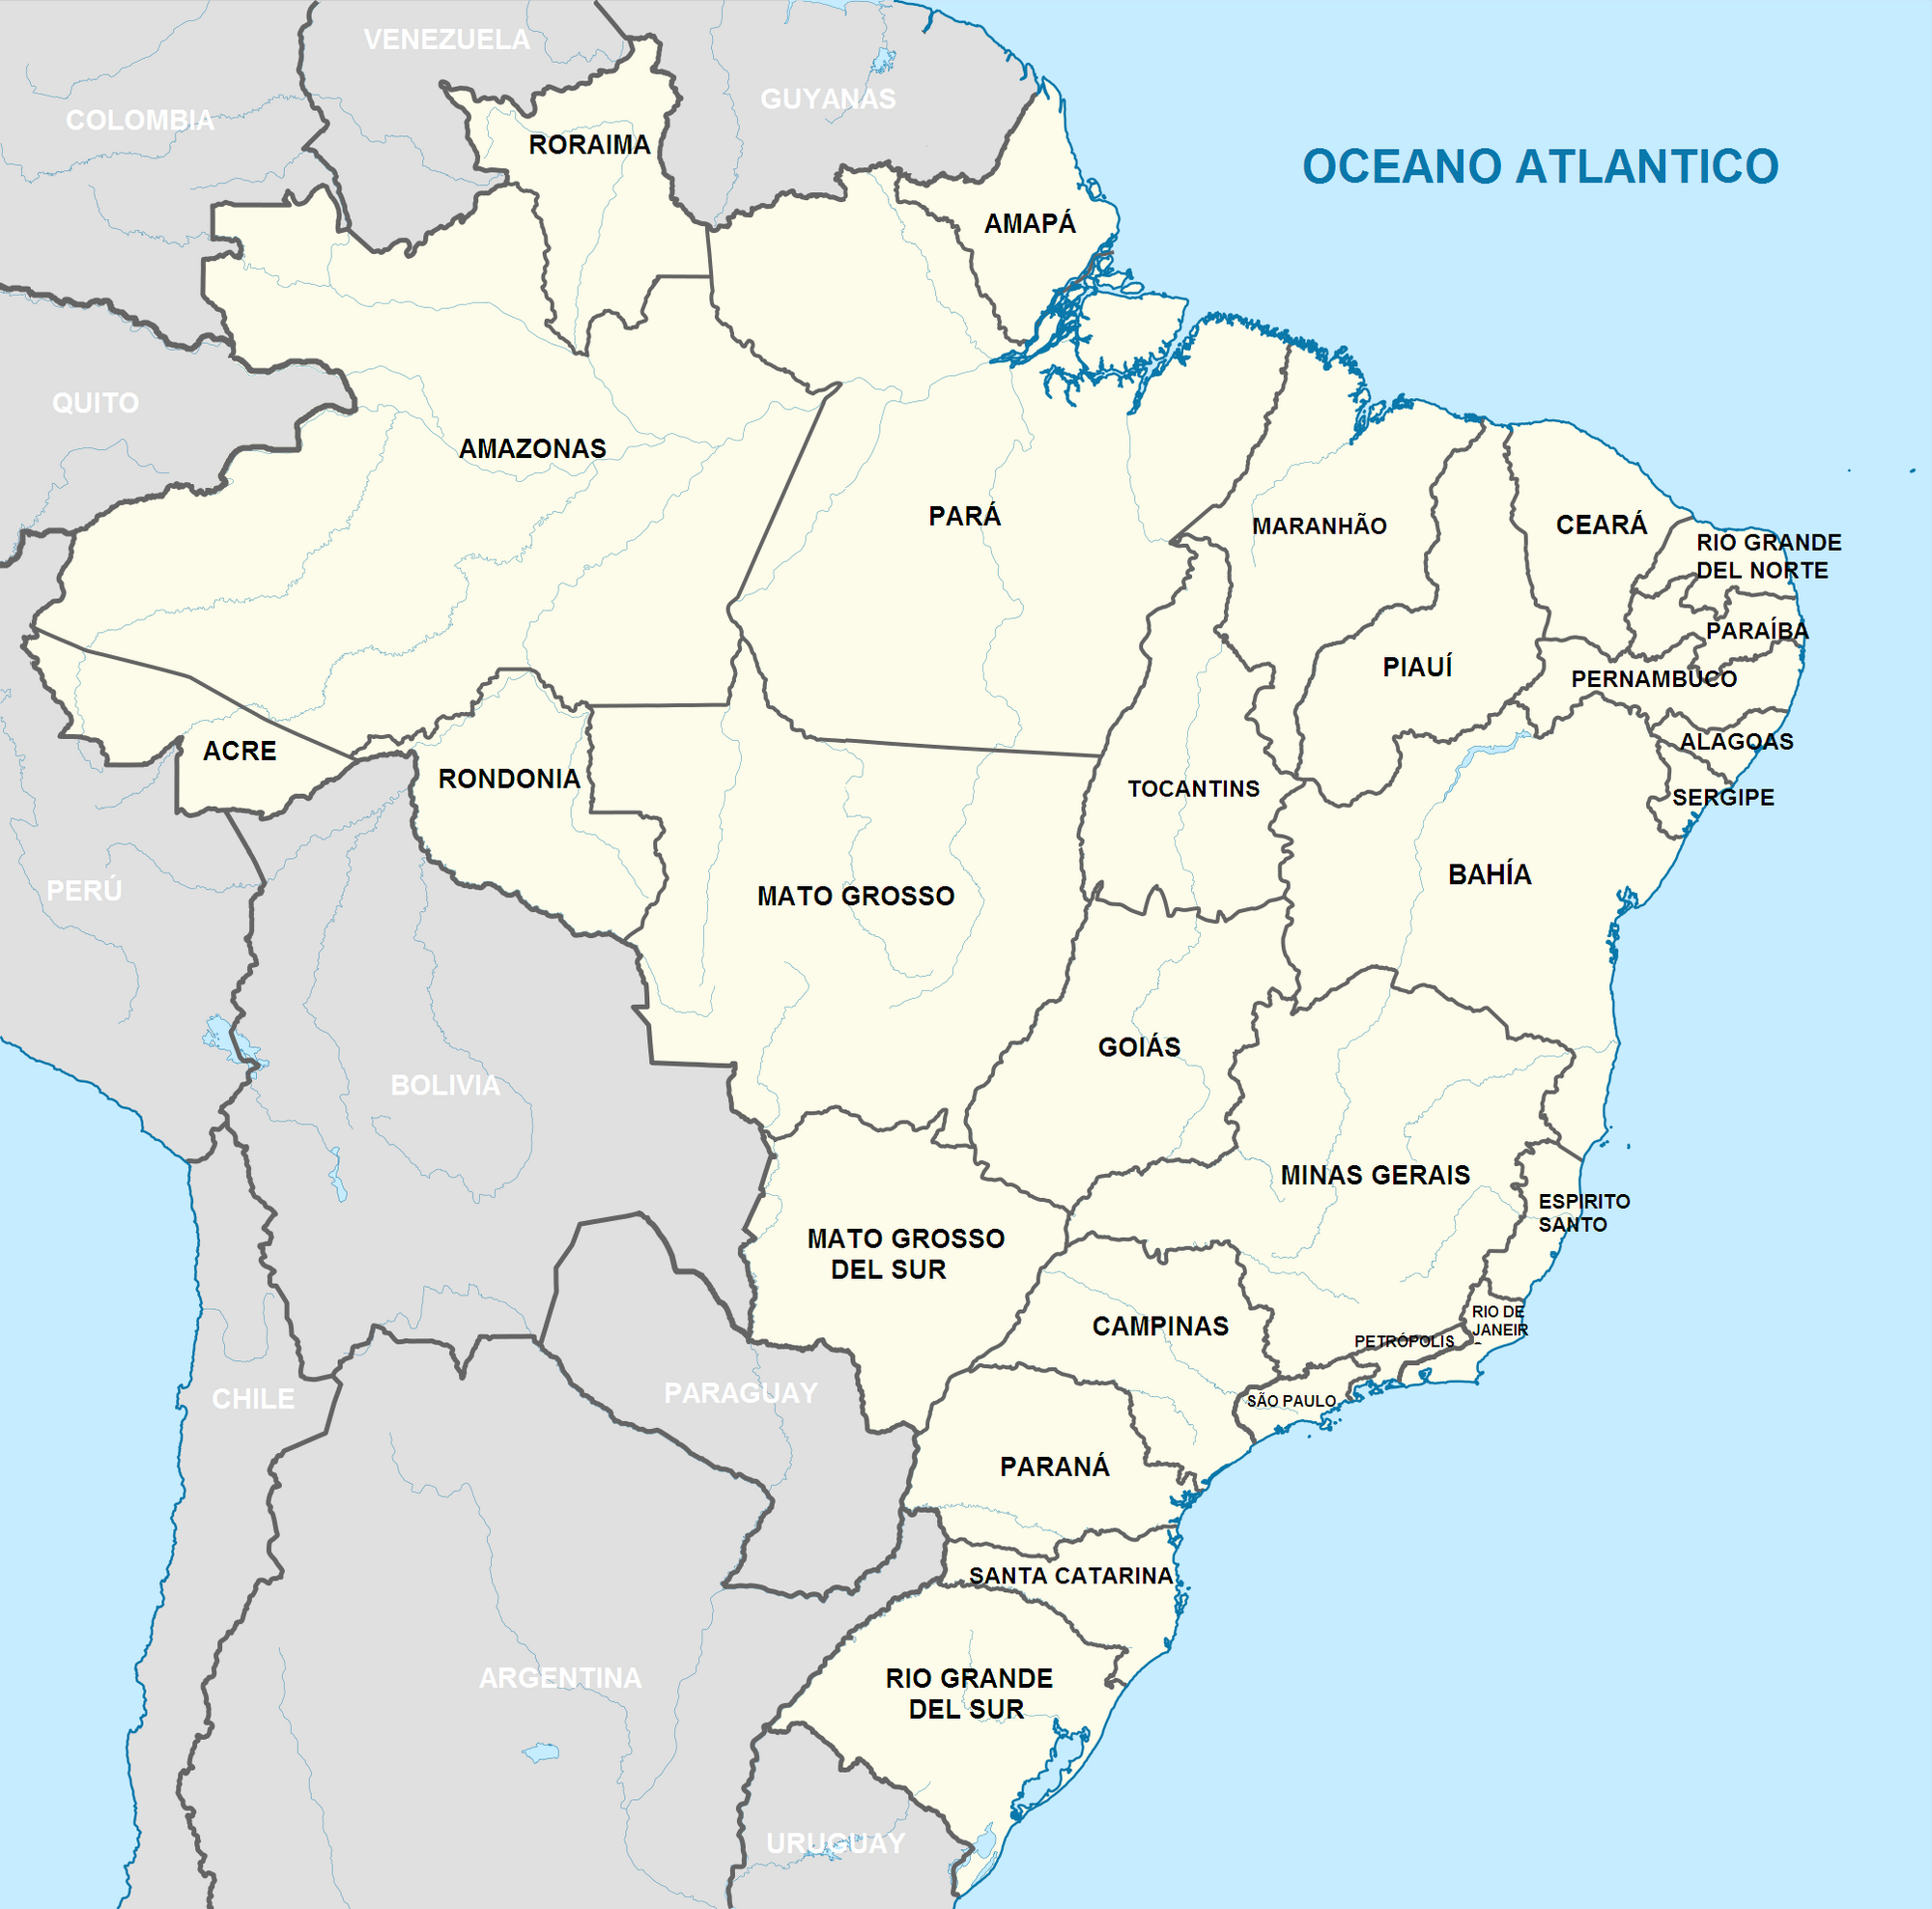 Штат Минас-Жерайс Бразилия на карте. Минас-Жерайс Бразилия на карте. Алаодоас штат Бразилии. Минажирайз штат Бразилии. Штат в бразилии 5